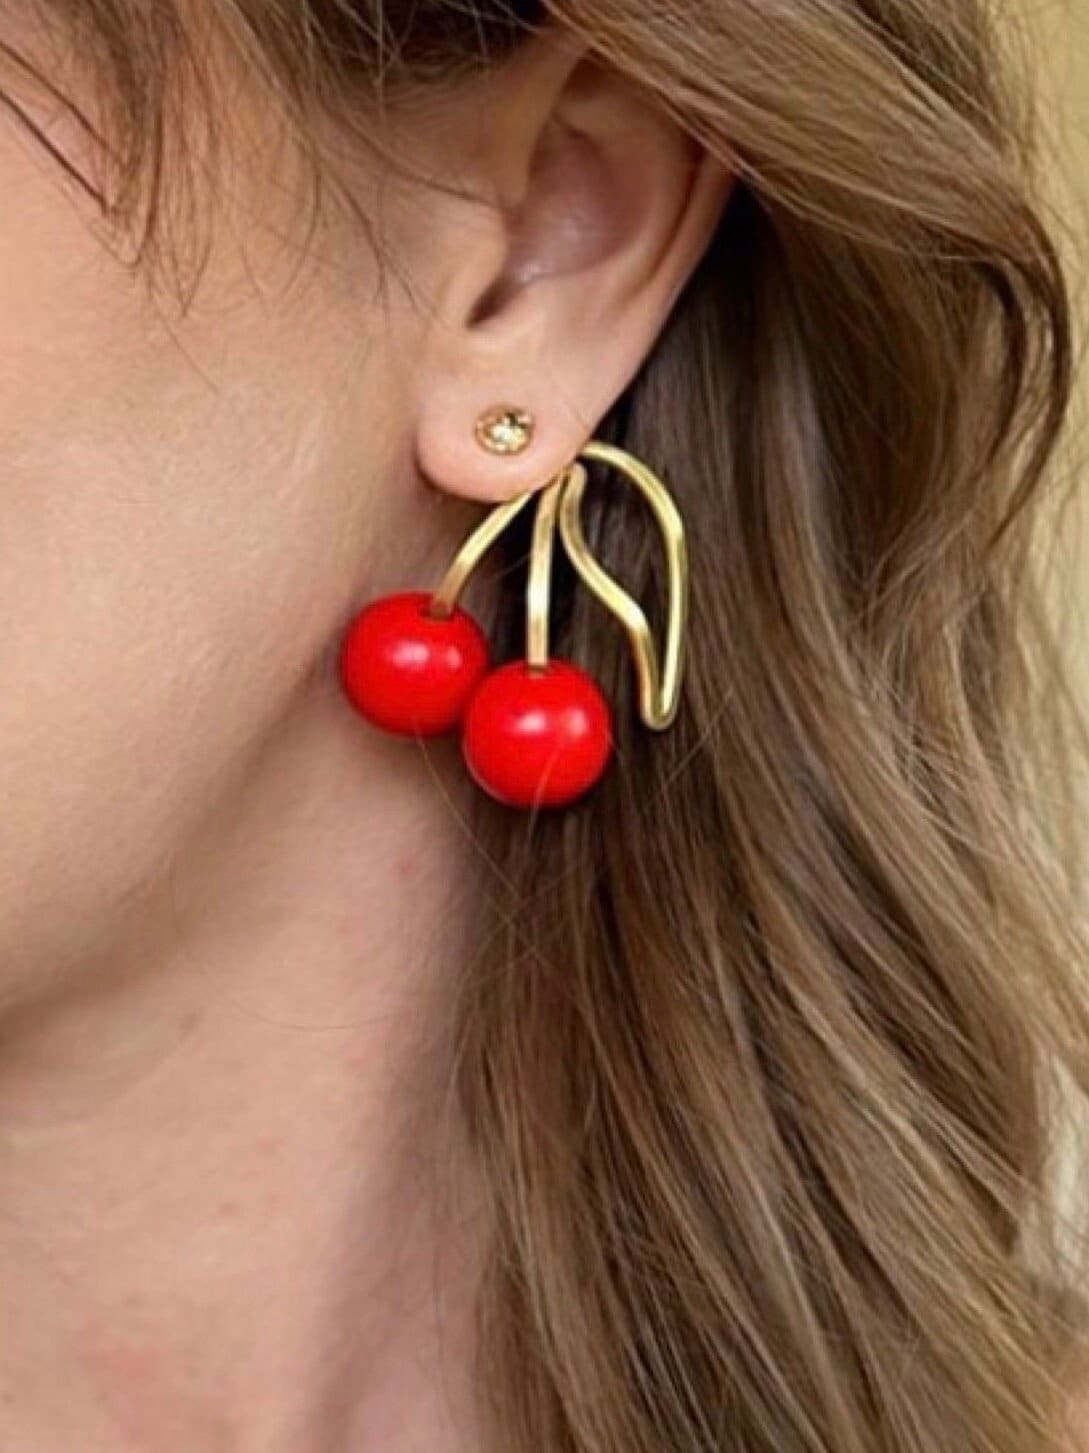 Kid's Sweet Enamel Cherry Screw Back Earrings in 14K Gold | Jewelry Vine